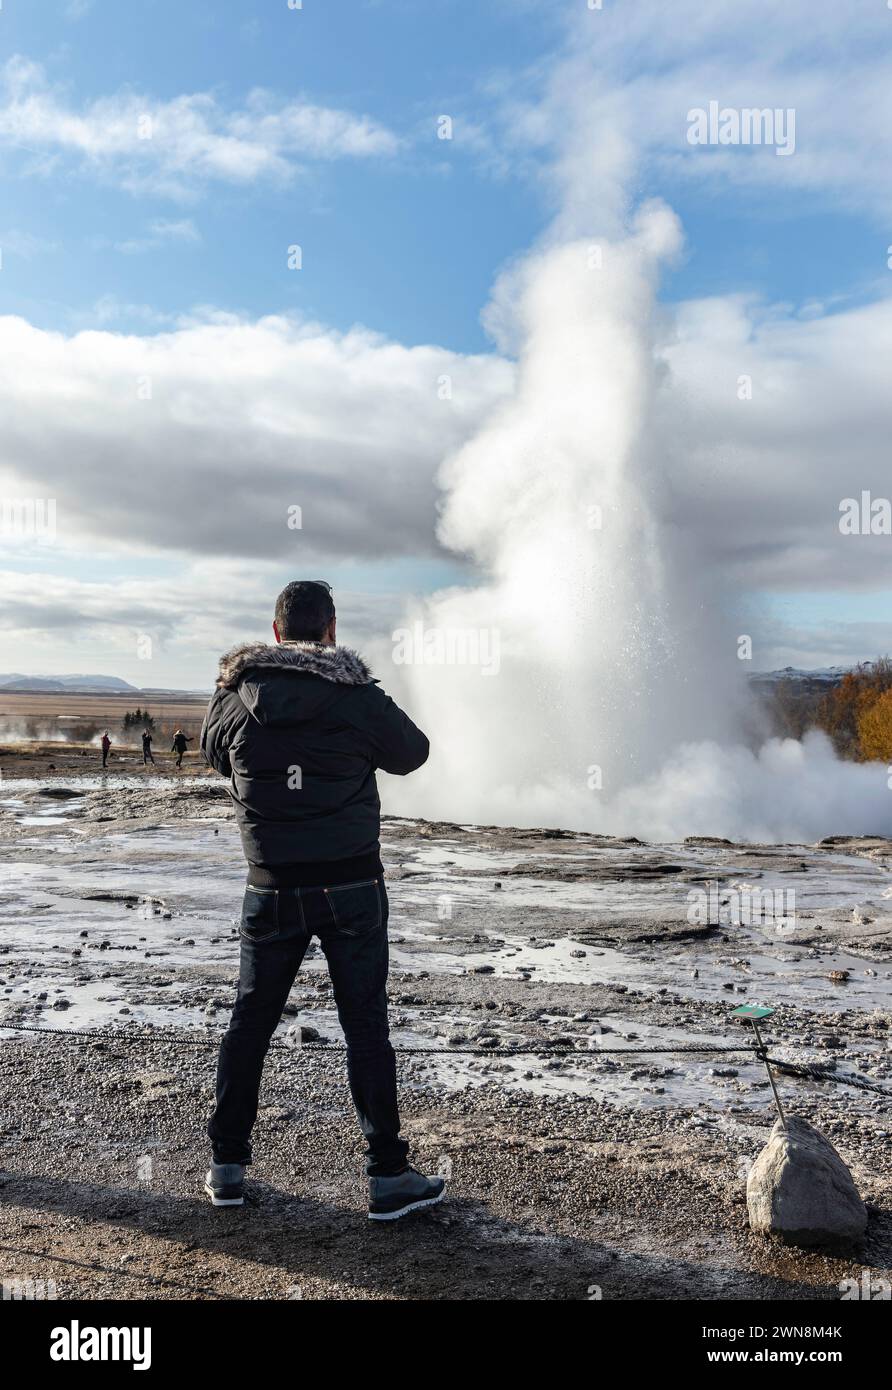 Vista posteriore di un anonimo viaggiatore maschile che guarda lontano mentre si trova su un terreno vulcanico roccioso con acqua alla luce del giorno e ammira il vapore bianco Foto Stock